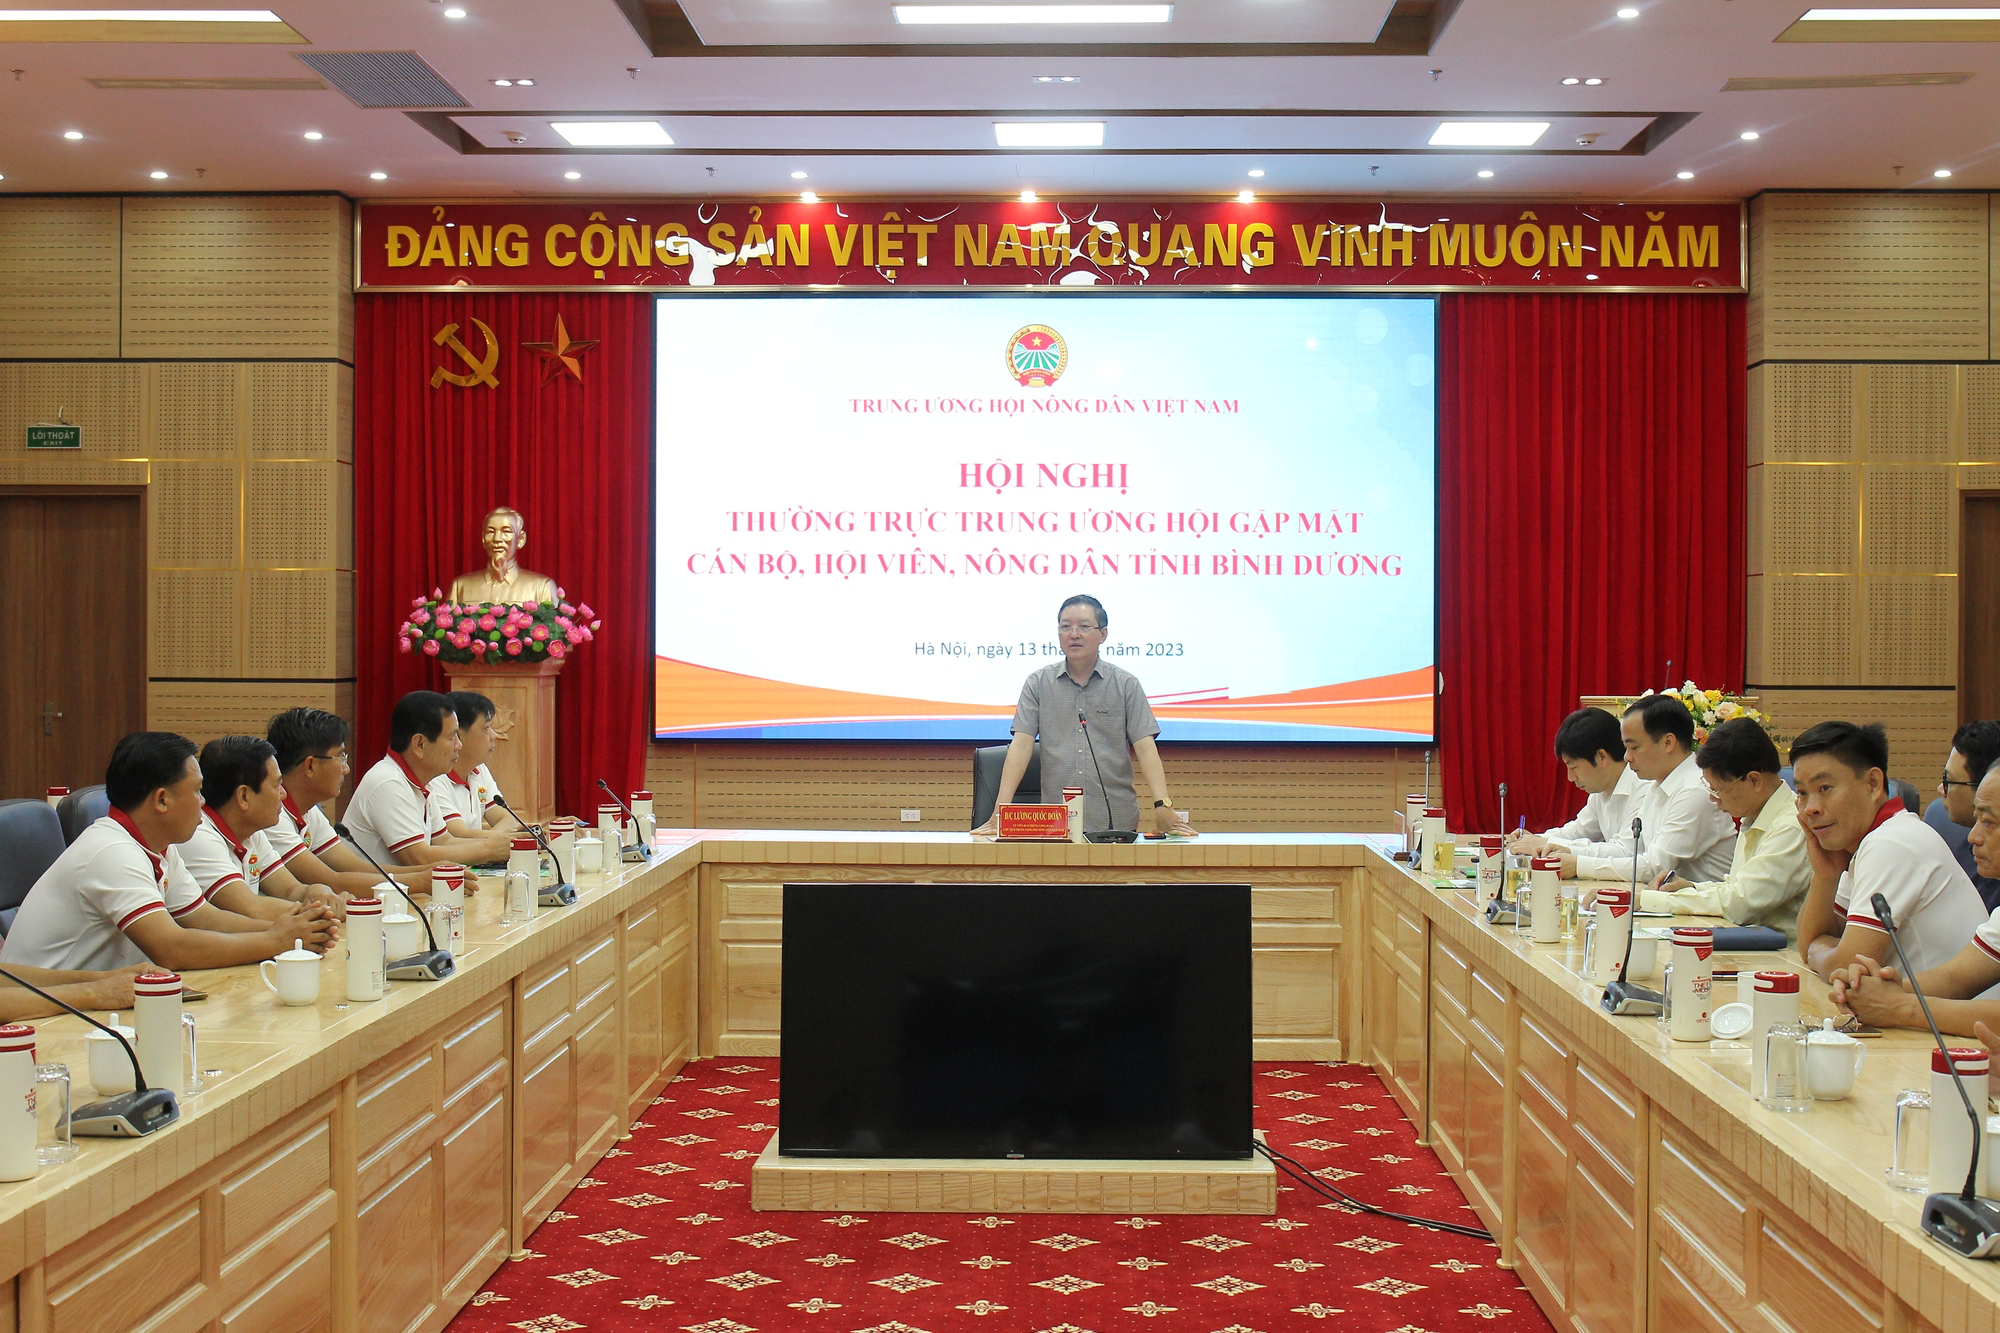 Thường trực Trung ương Hội Nông dân Việt Nam gặp mặt cán bộ, hội viên, nông dân tỉnh Bình Dương - Ảnh 1.